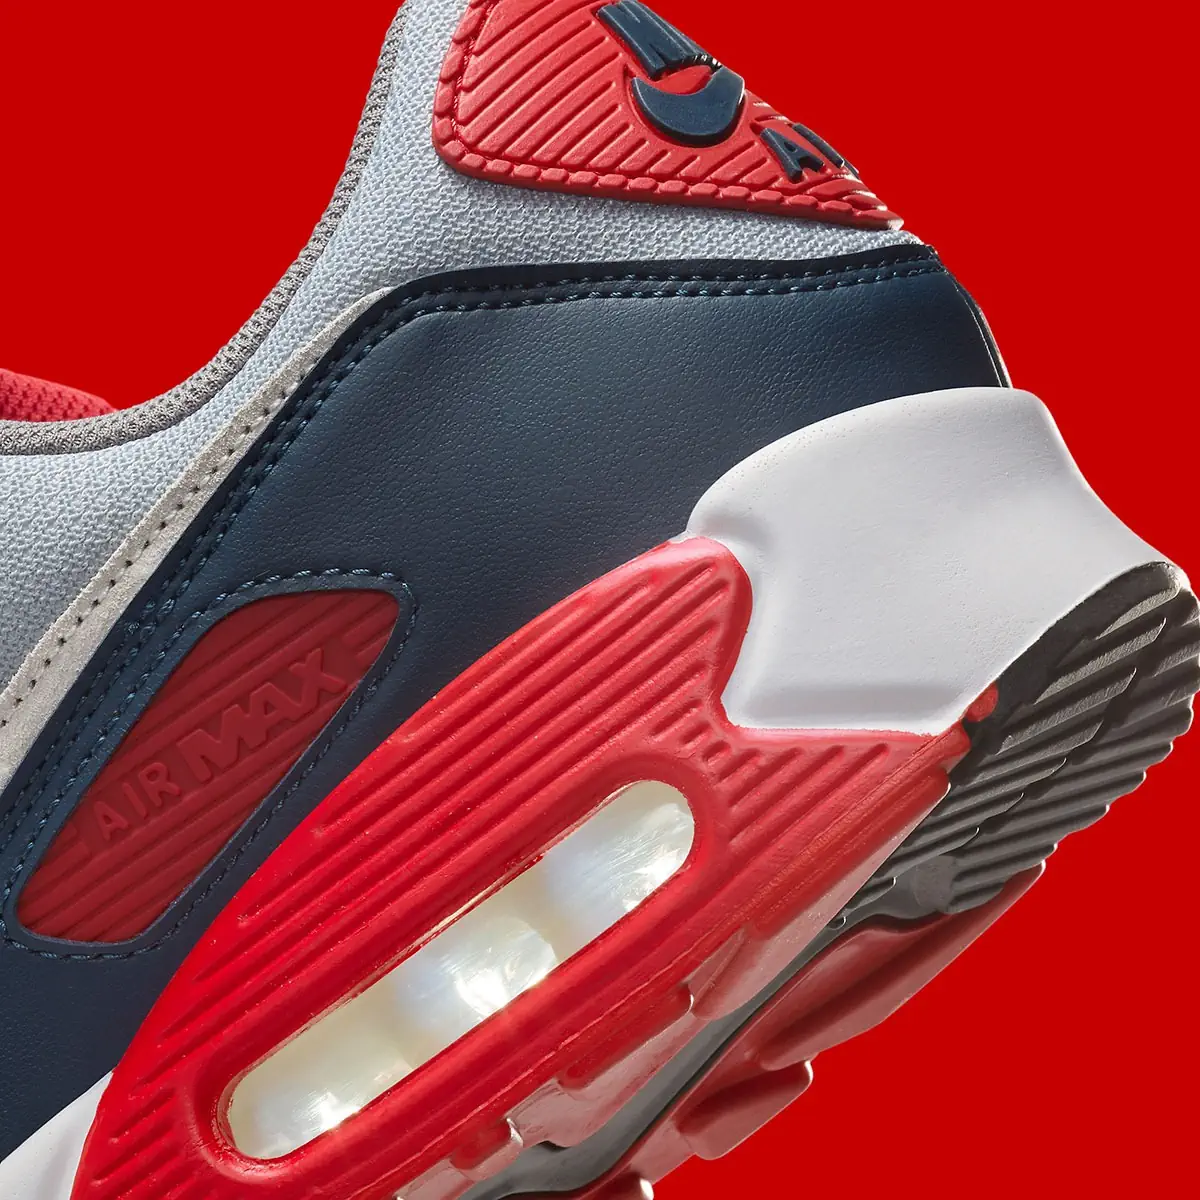 La Nike Air Max 90 “USA” célèbre le Jour de l'Indépendance avec style